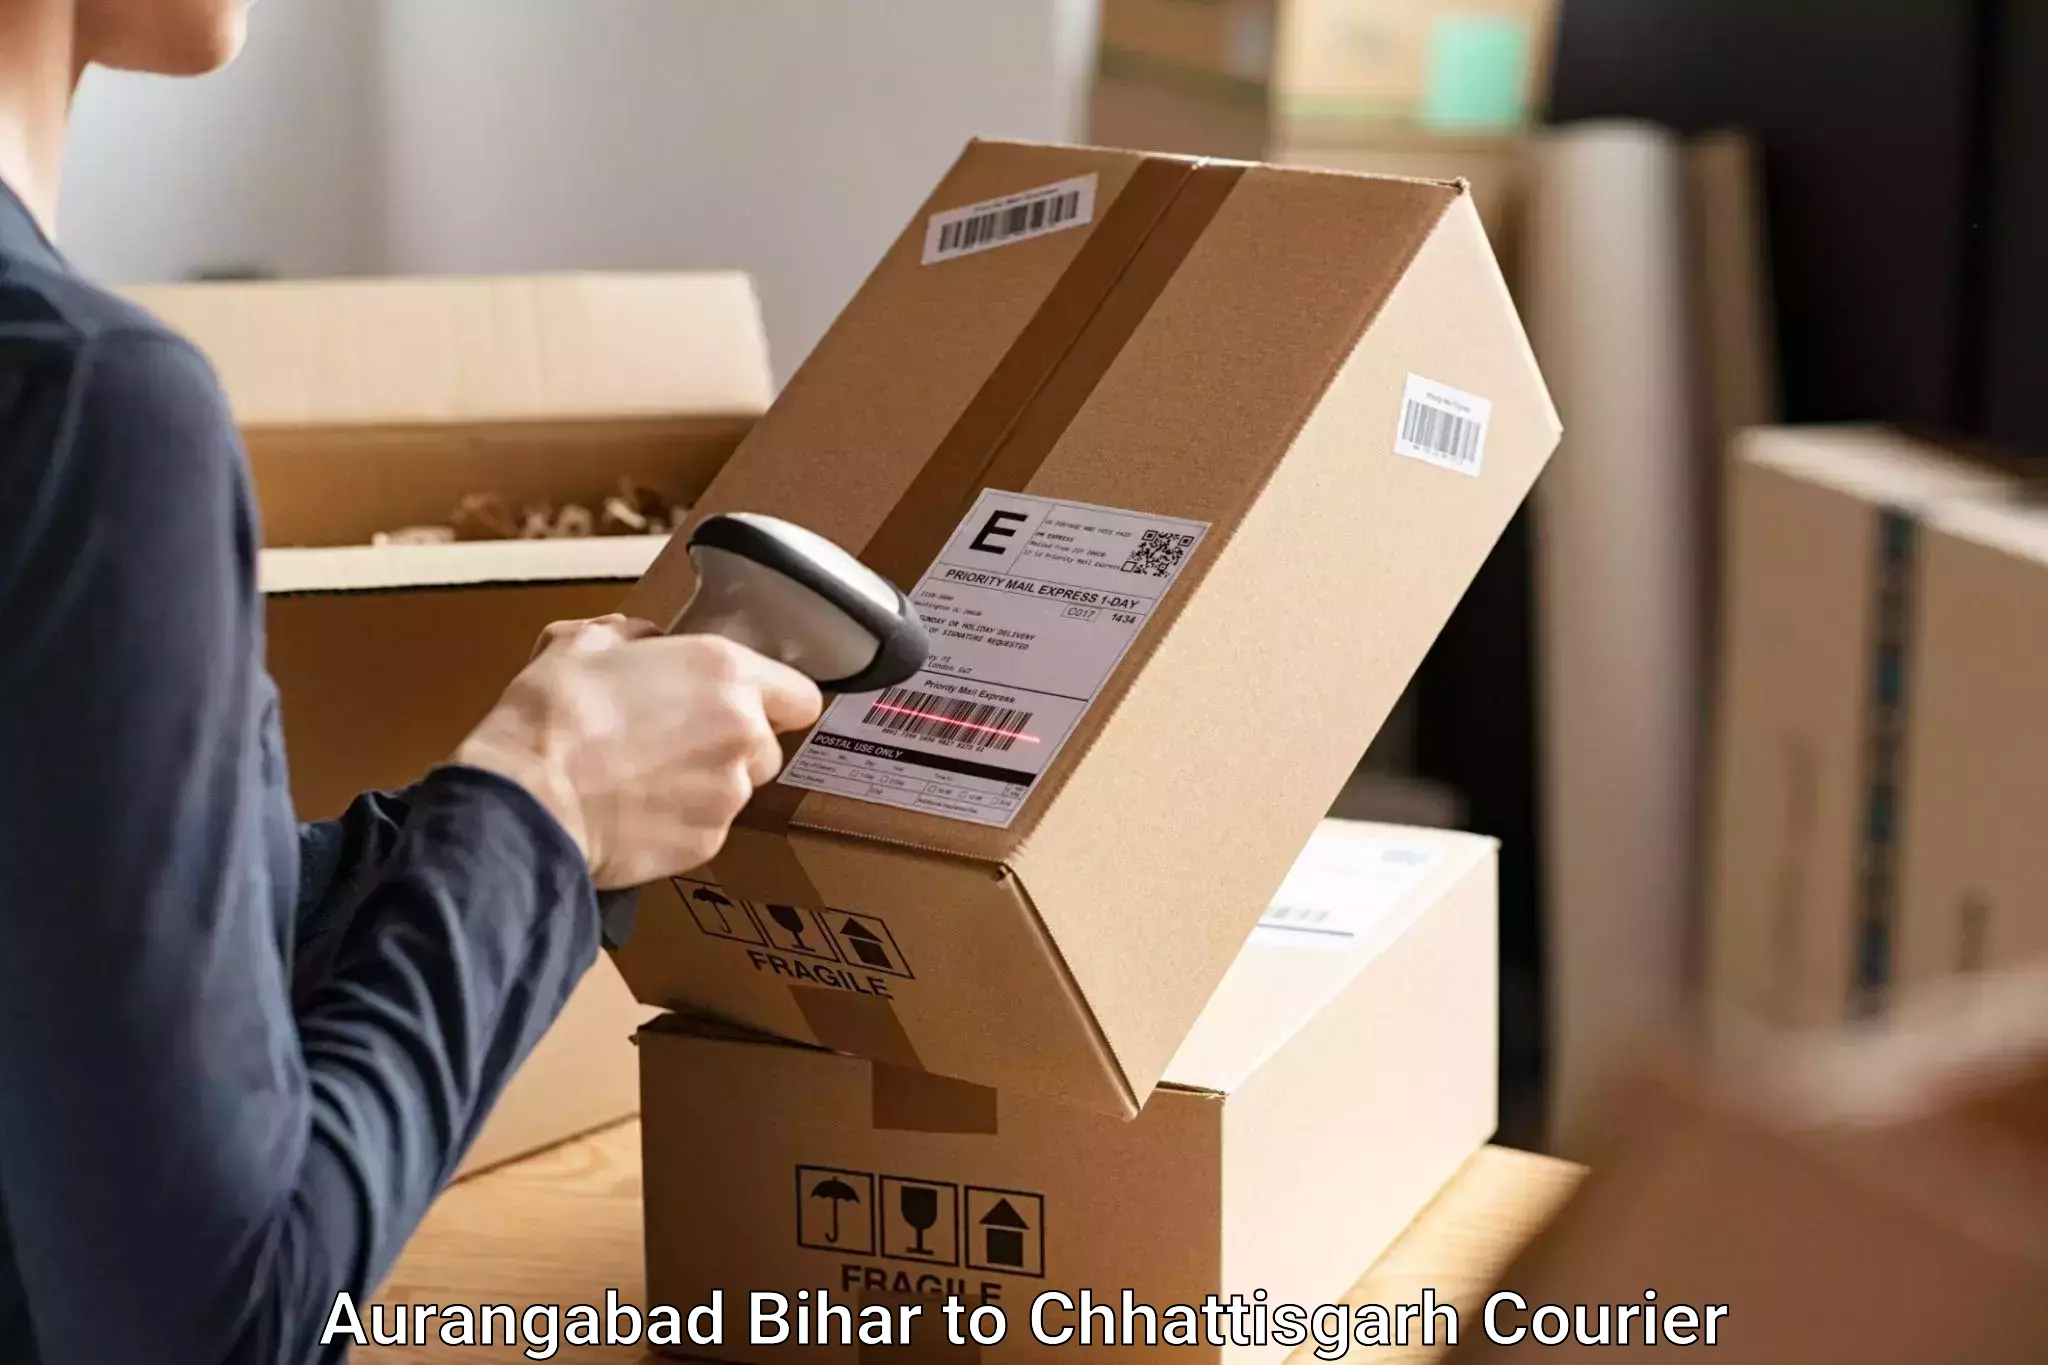 Luggage transport operations Aurangabad Bihar to Pithora